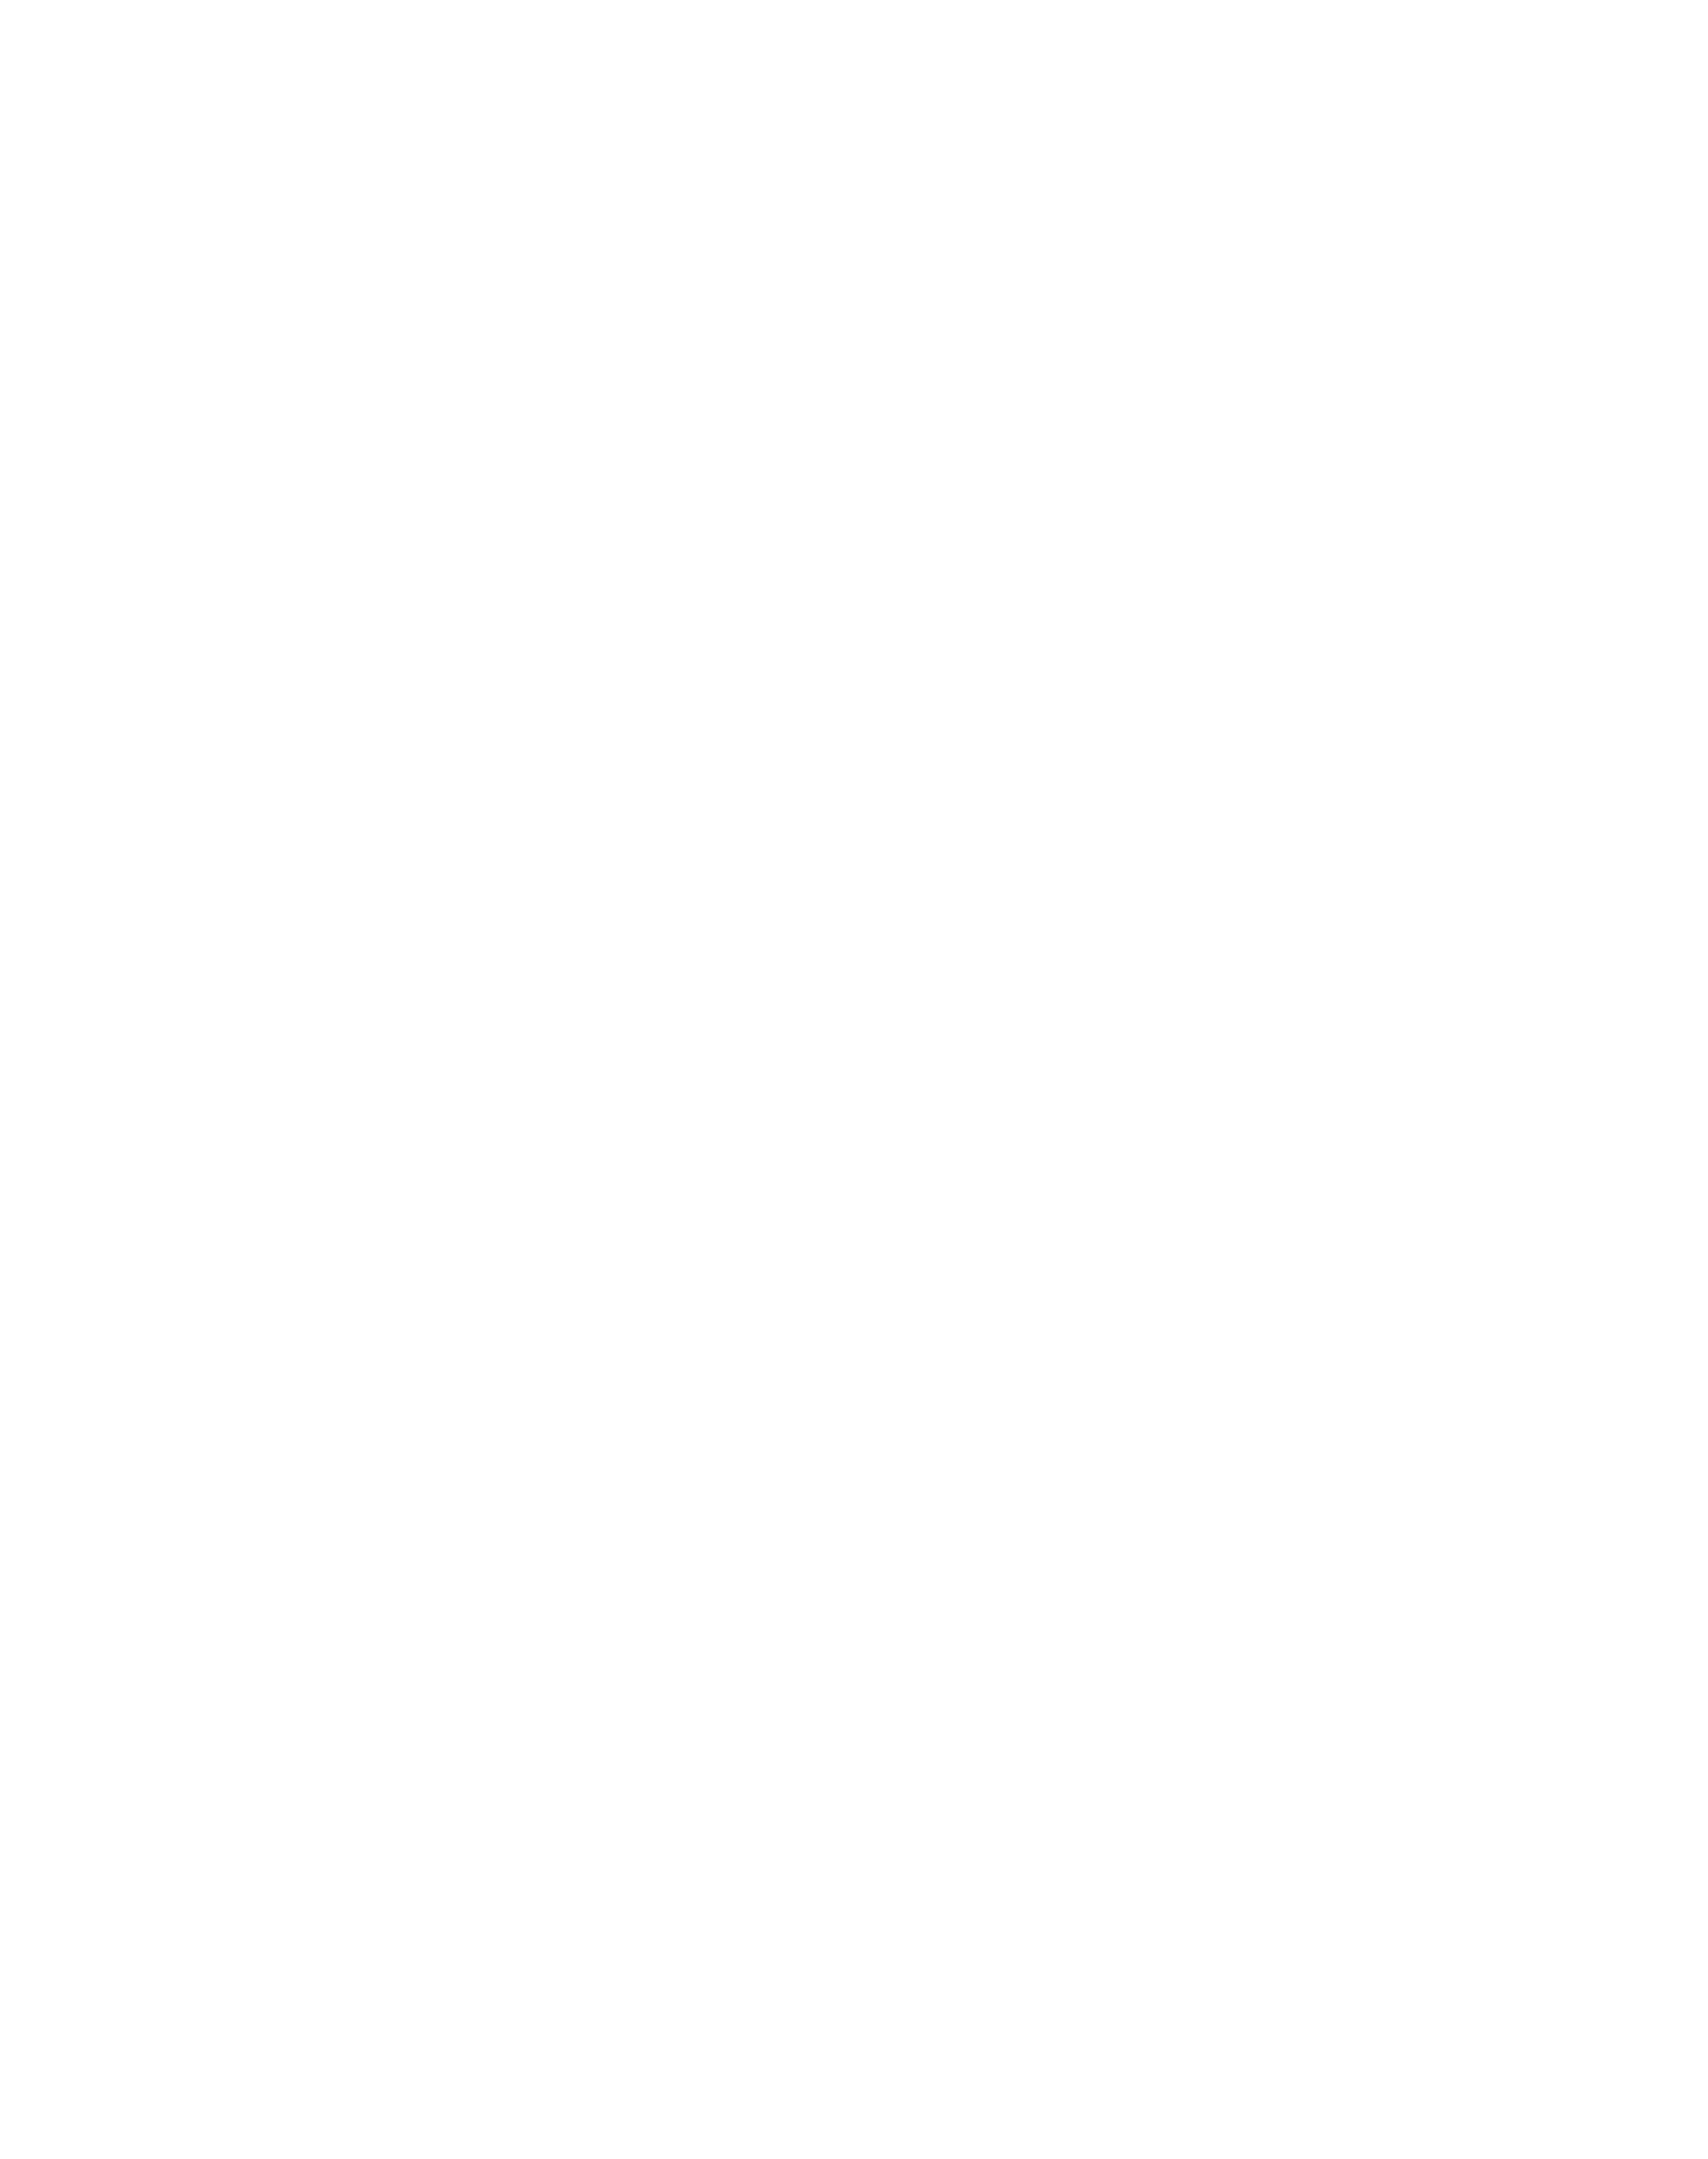 Safeharbor Church